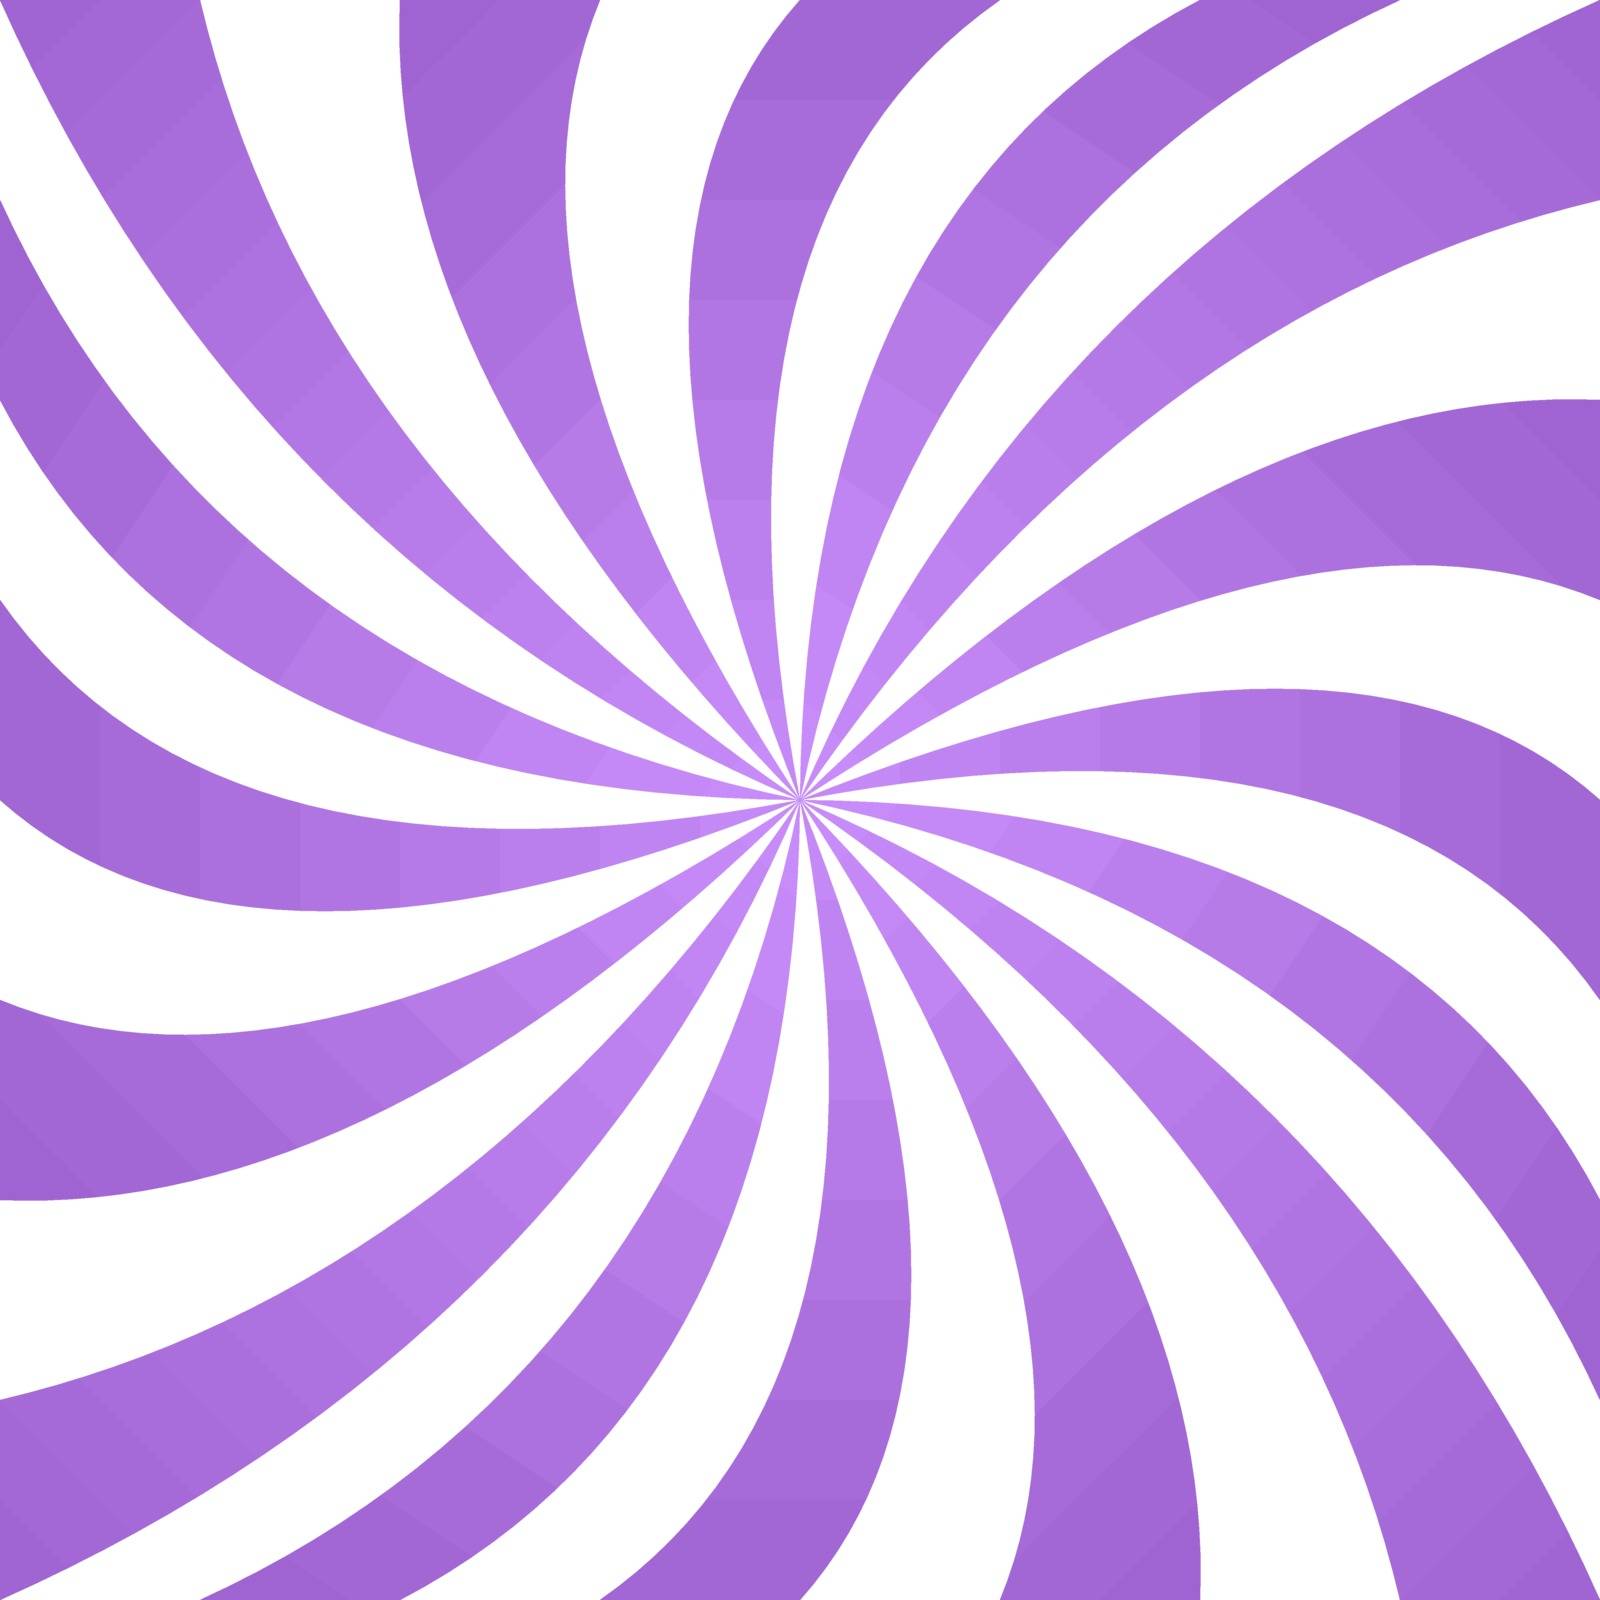 Lavender happy summer twirl pattern background design